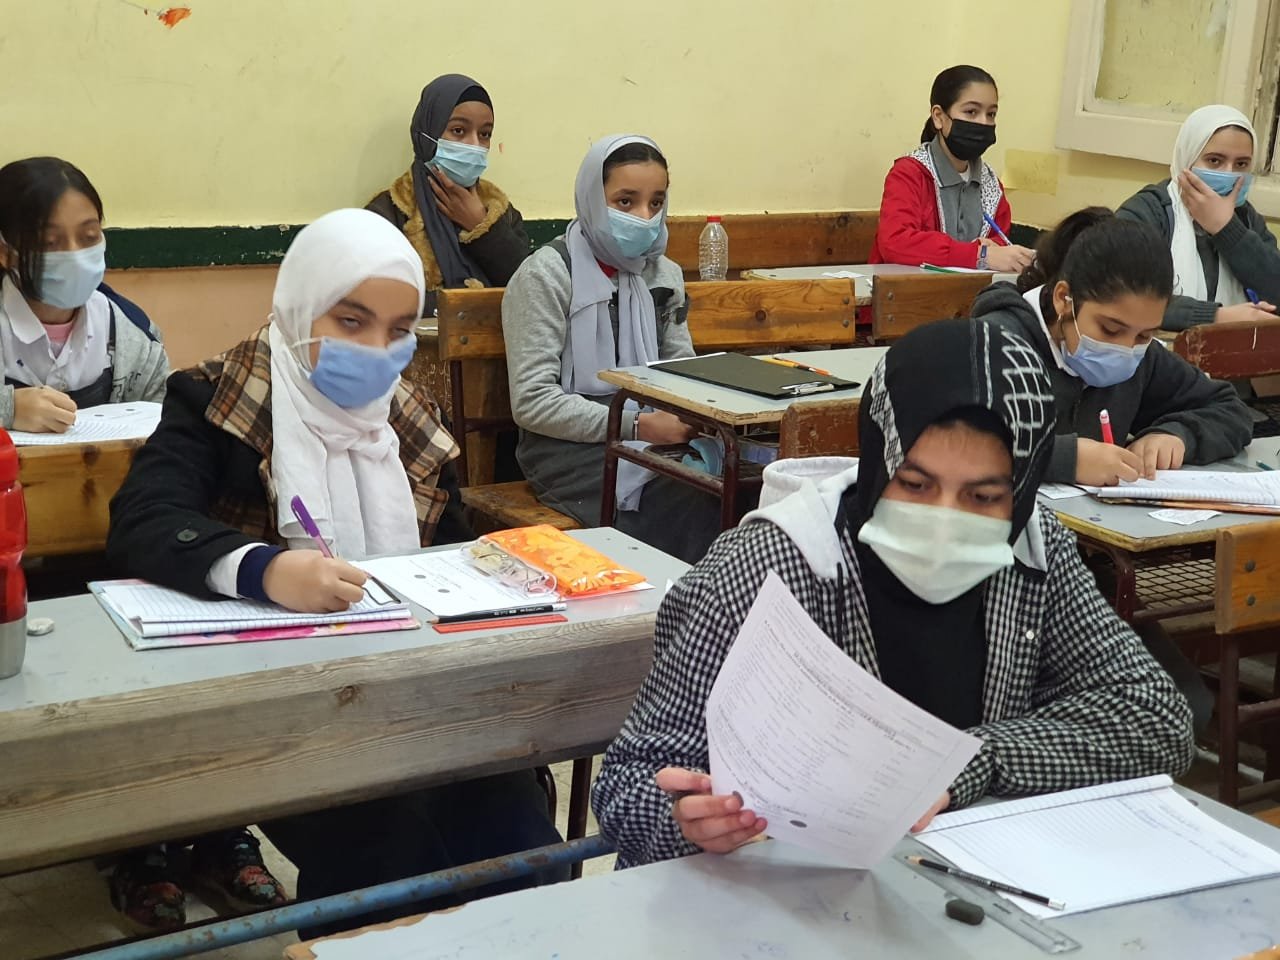 أولياء أمور مصر: الامتحانات الشهرية عبء على الامهات وتستهلك وقت الدراسة